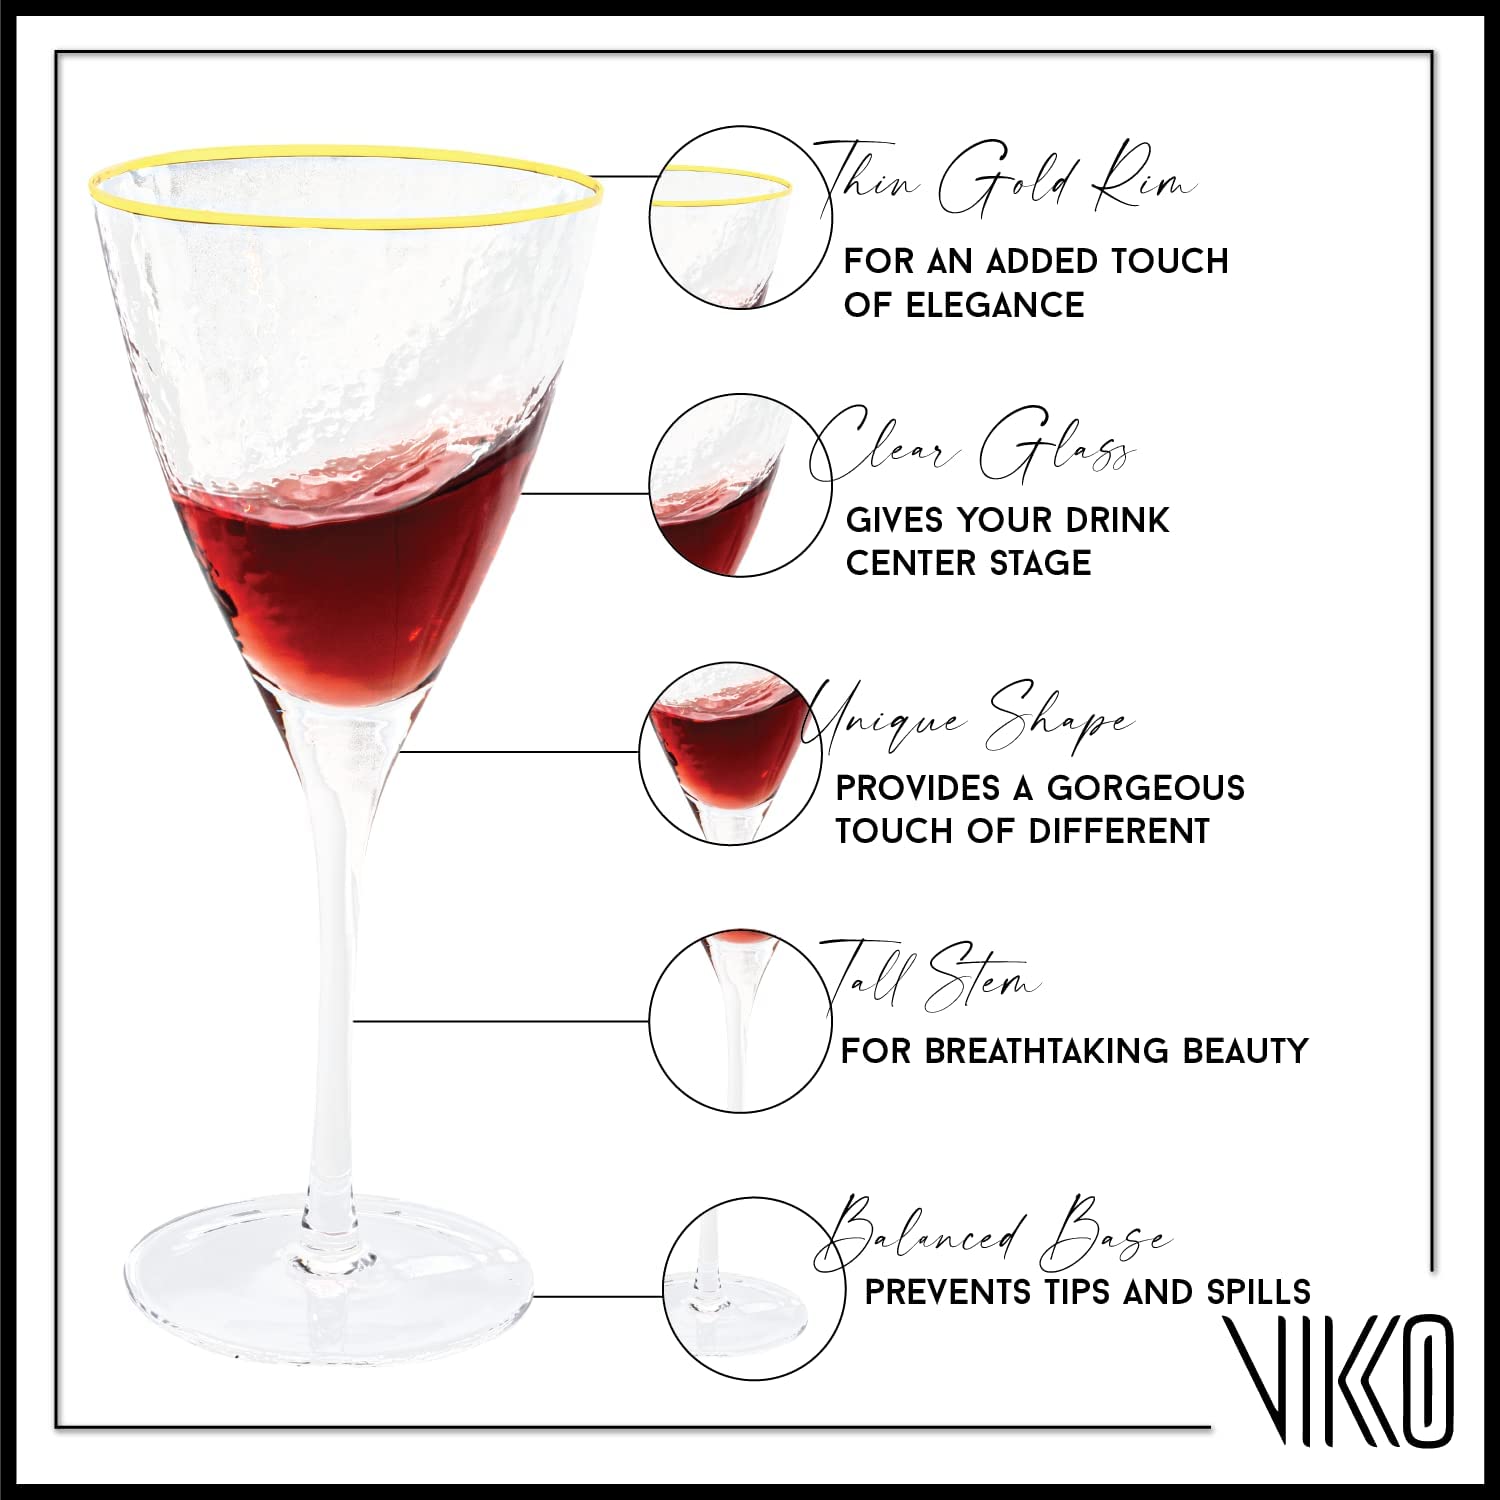 Vikko Decor - Gold Rim, Hammered Wine Glass, 11.5 Oz- Set of 6